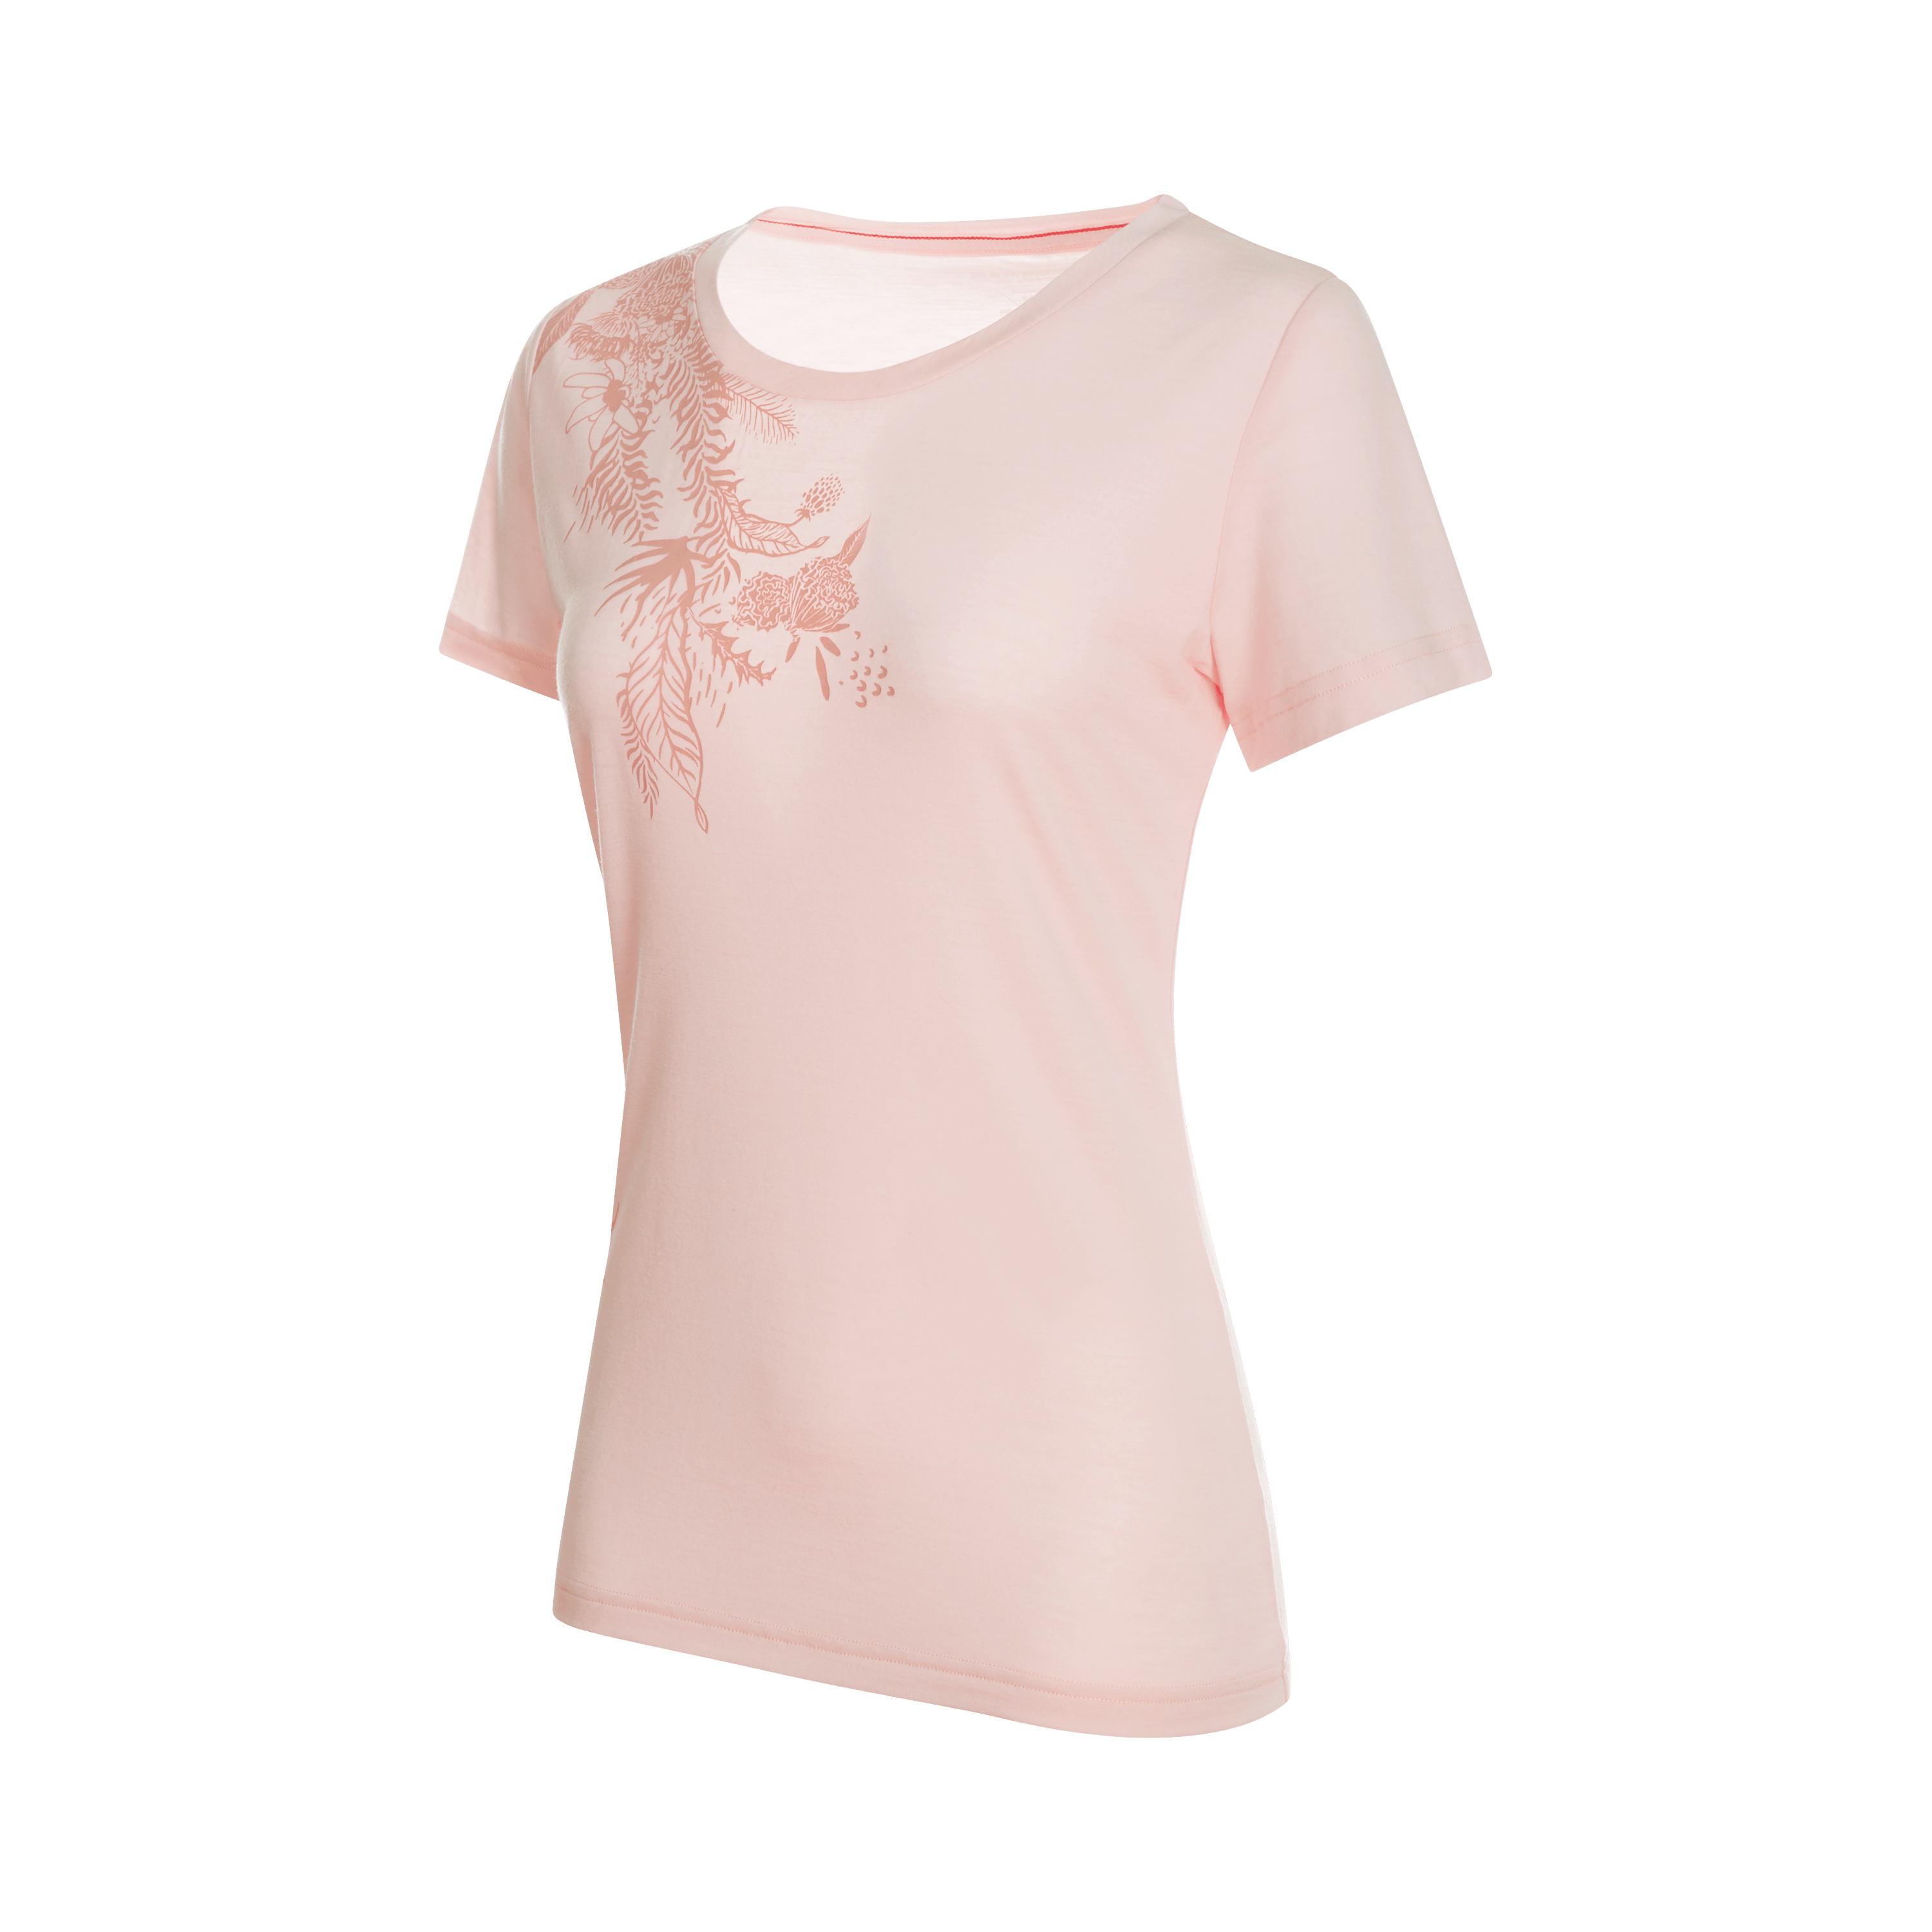 Alnasca T-Shirt Women